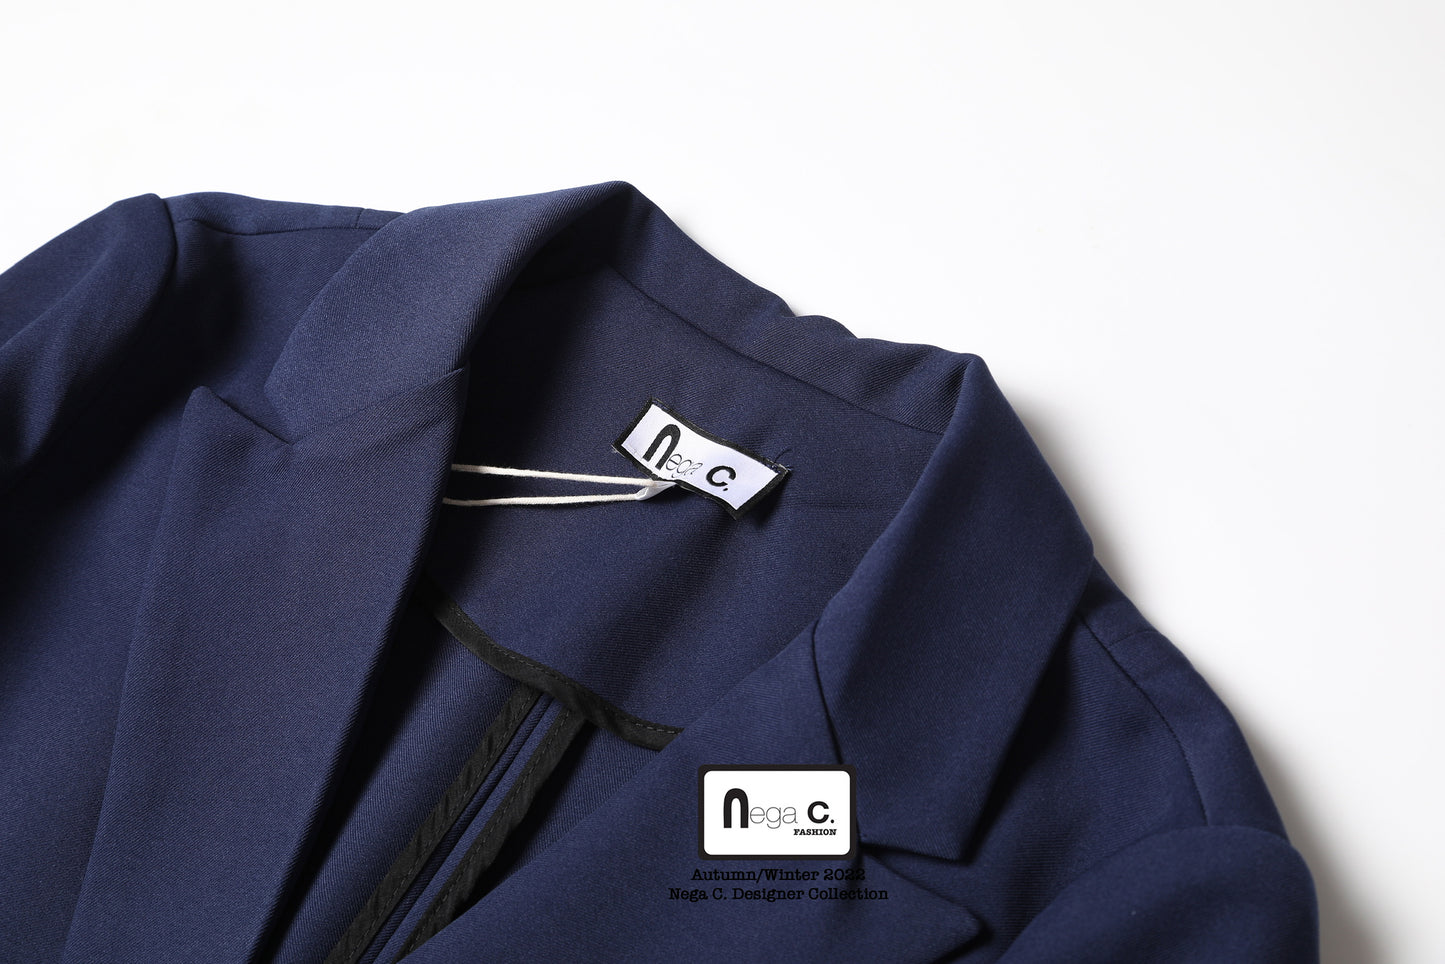 Nega C. 純色西裝外套|深藍色|微彈|無裡襯